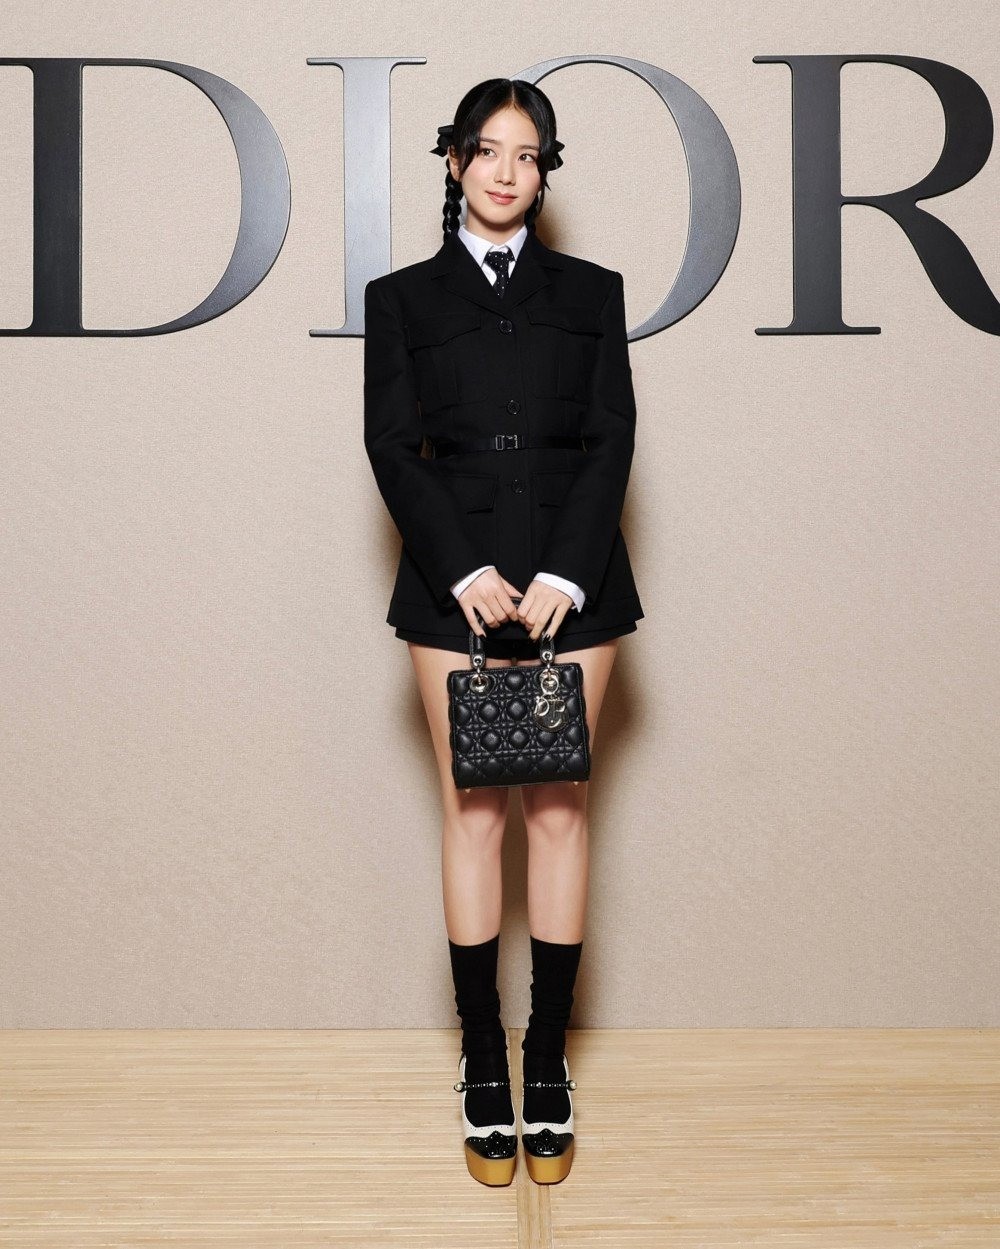 Rosé diện mốt lộ nội y, Jisoo hóa cây Dior sống gây sốt ảnh 13